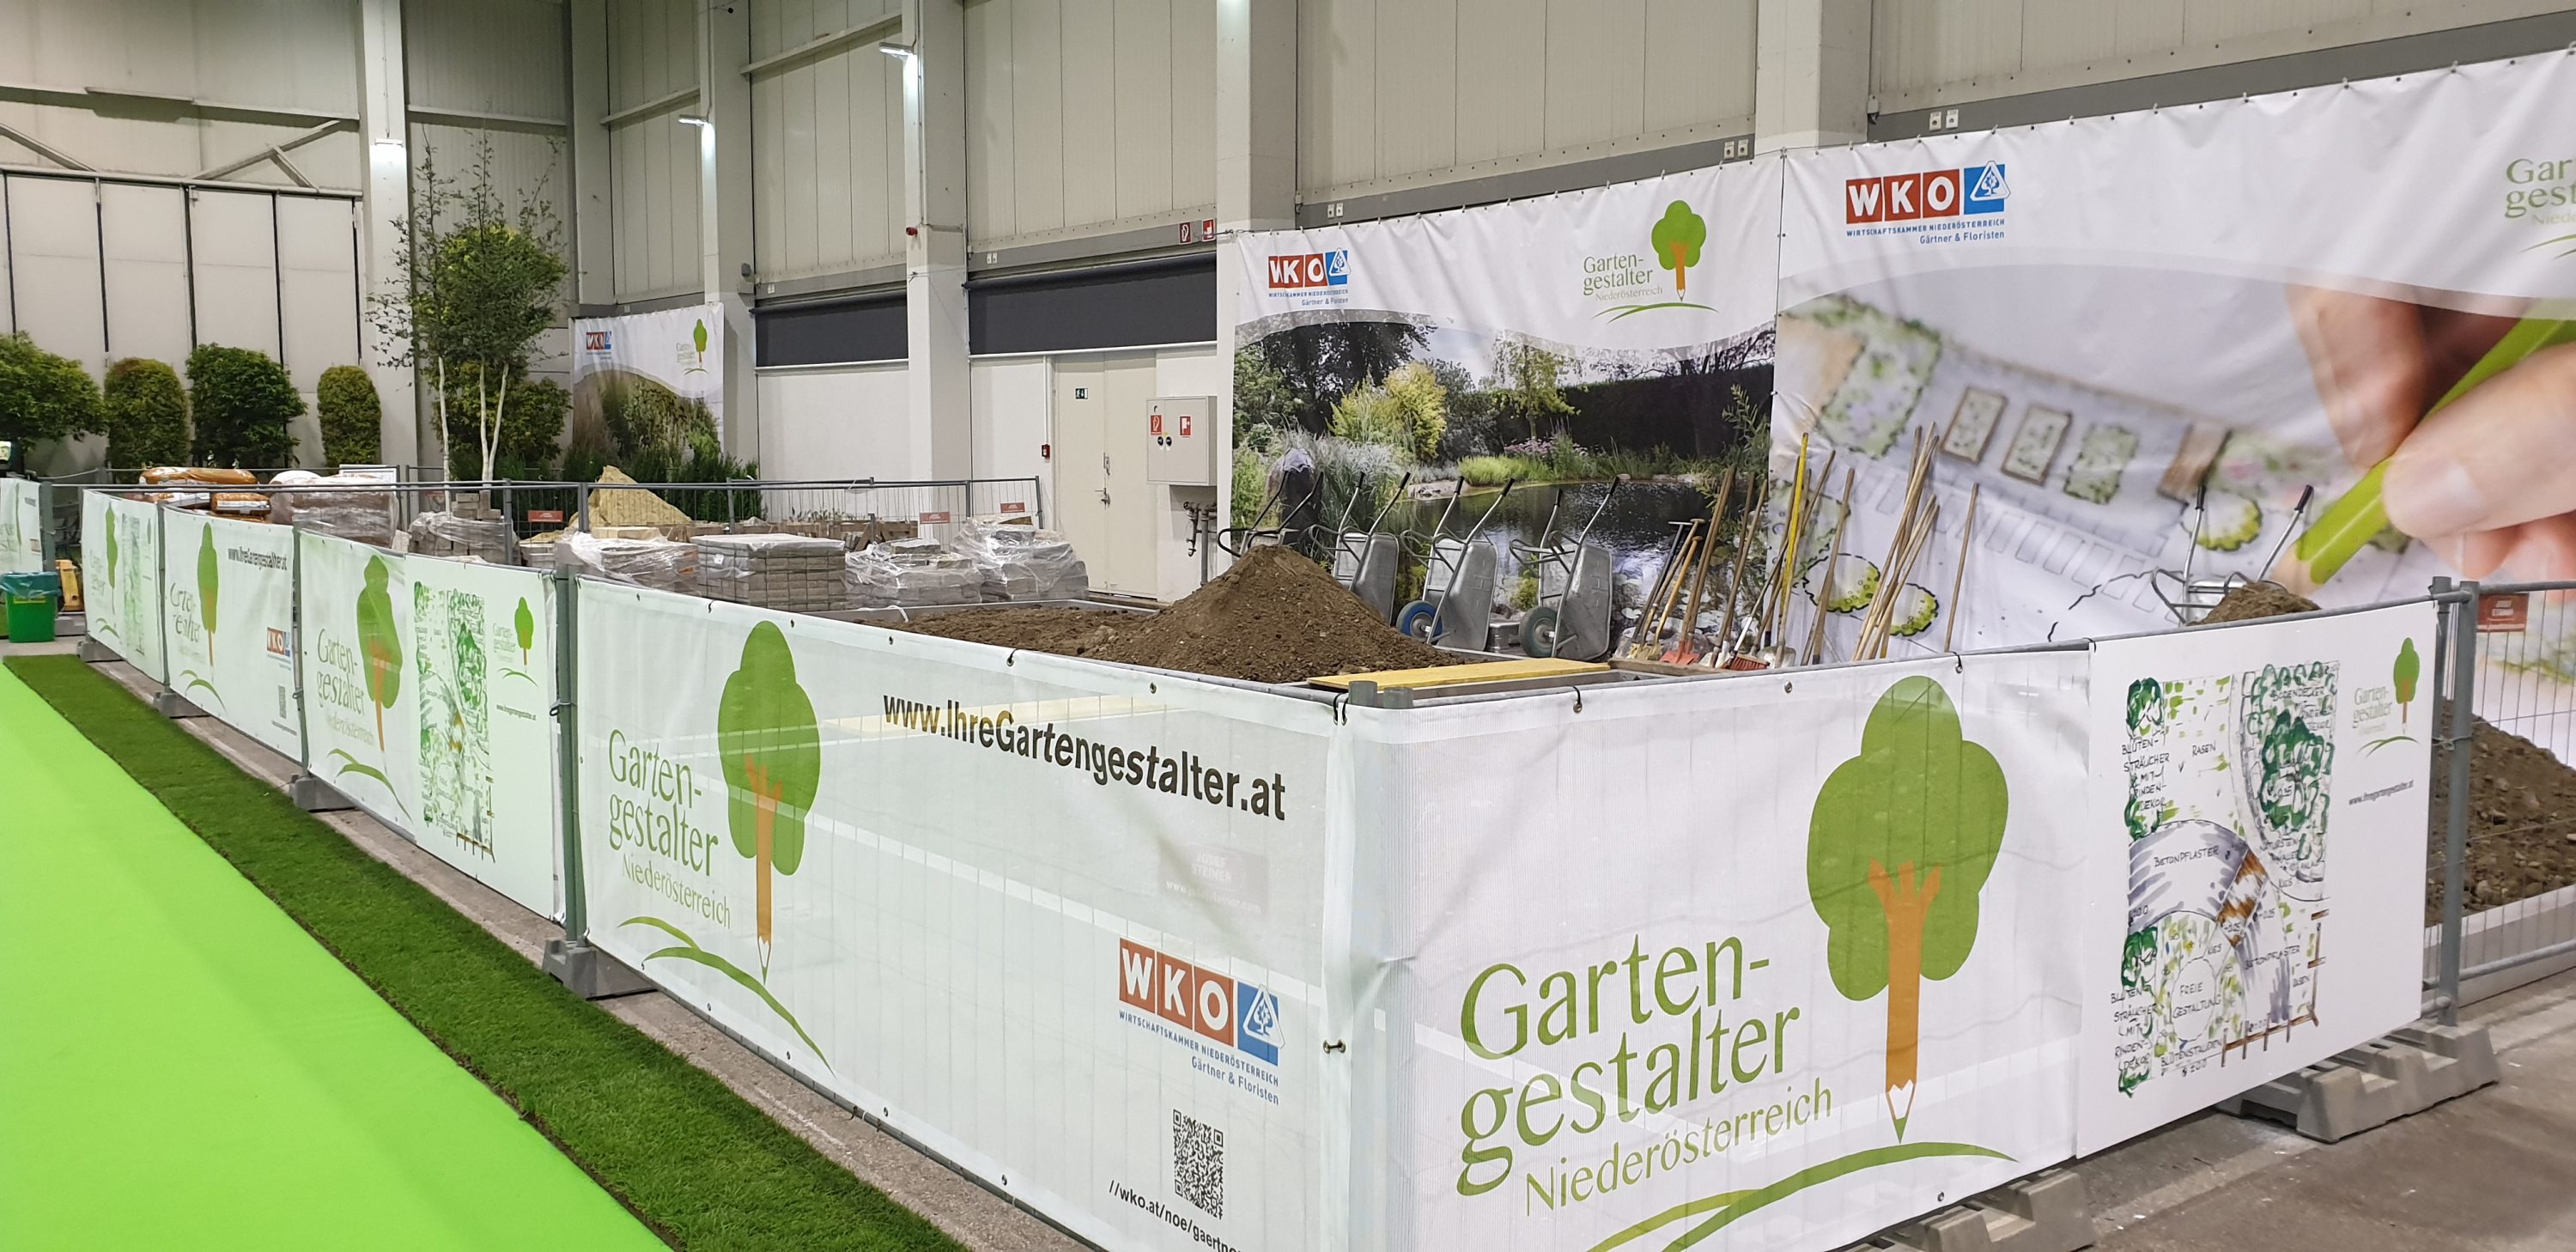 Gartenbaumesse Tulln 2020:  Grünes Handwerk hautnah erleben mit den niederösterreichischen Gartengestalter Teams